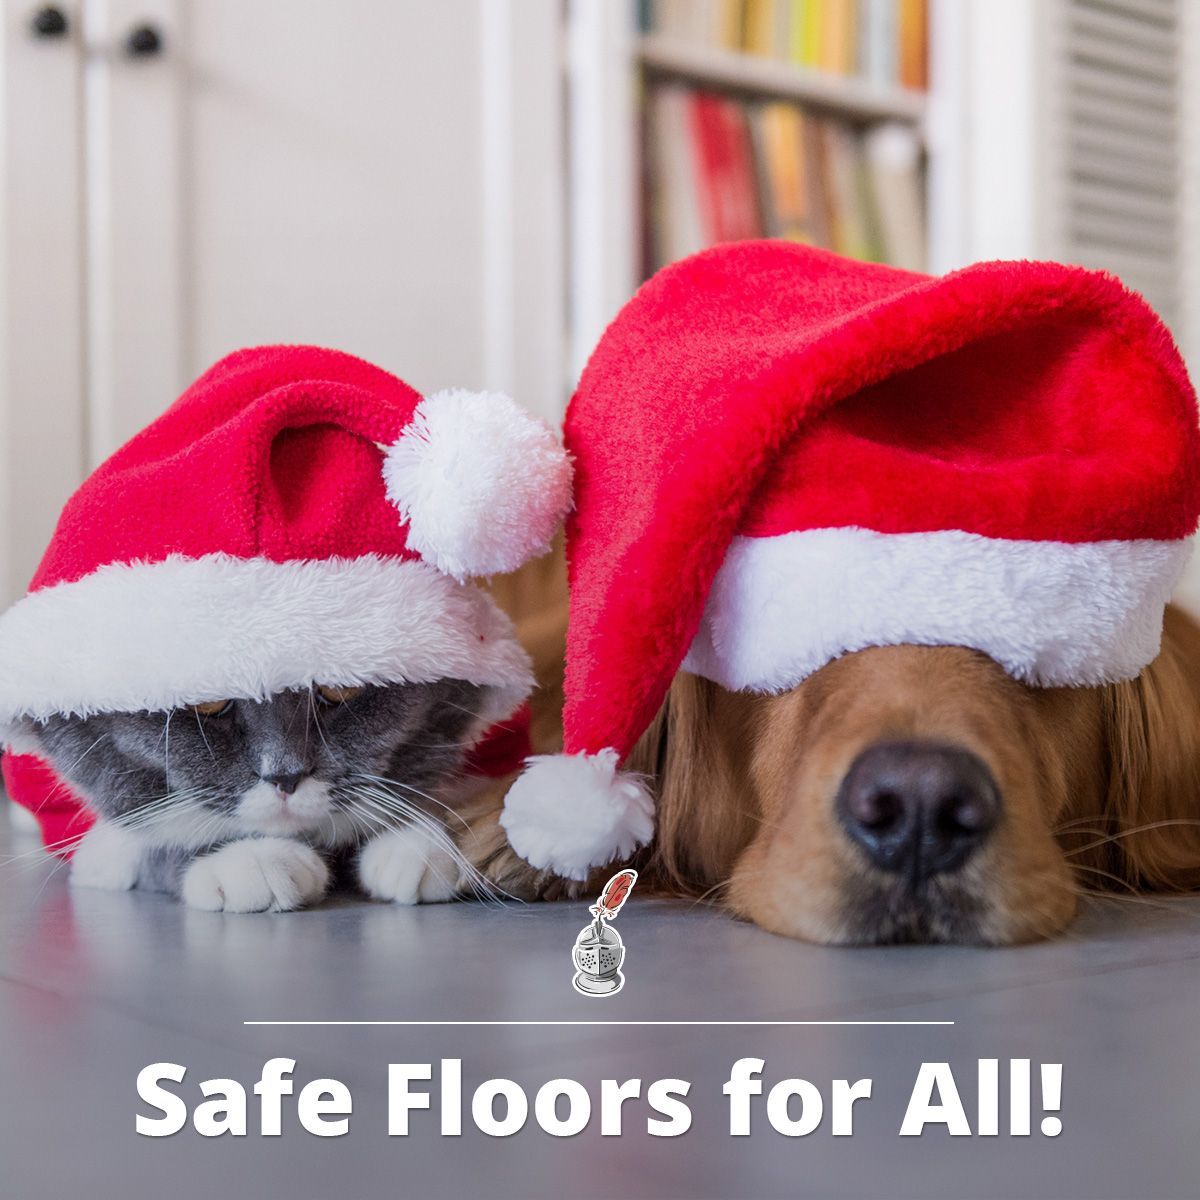 Safe Floors for All!